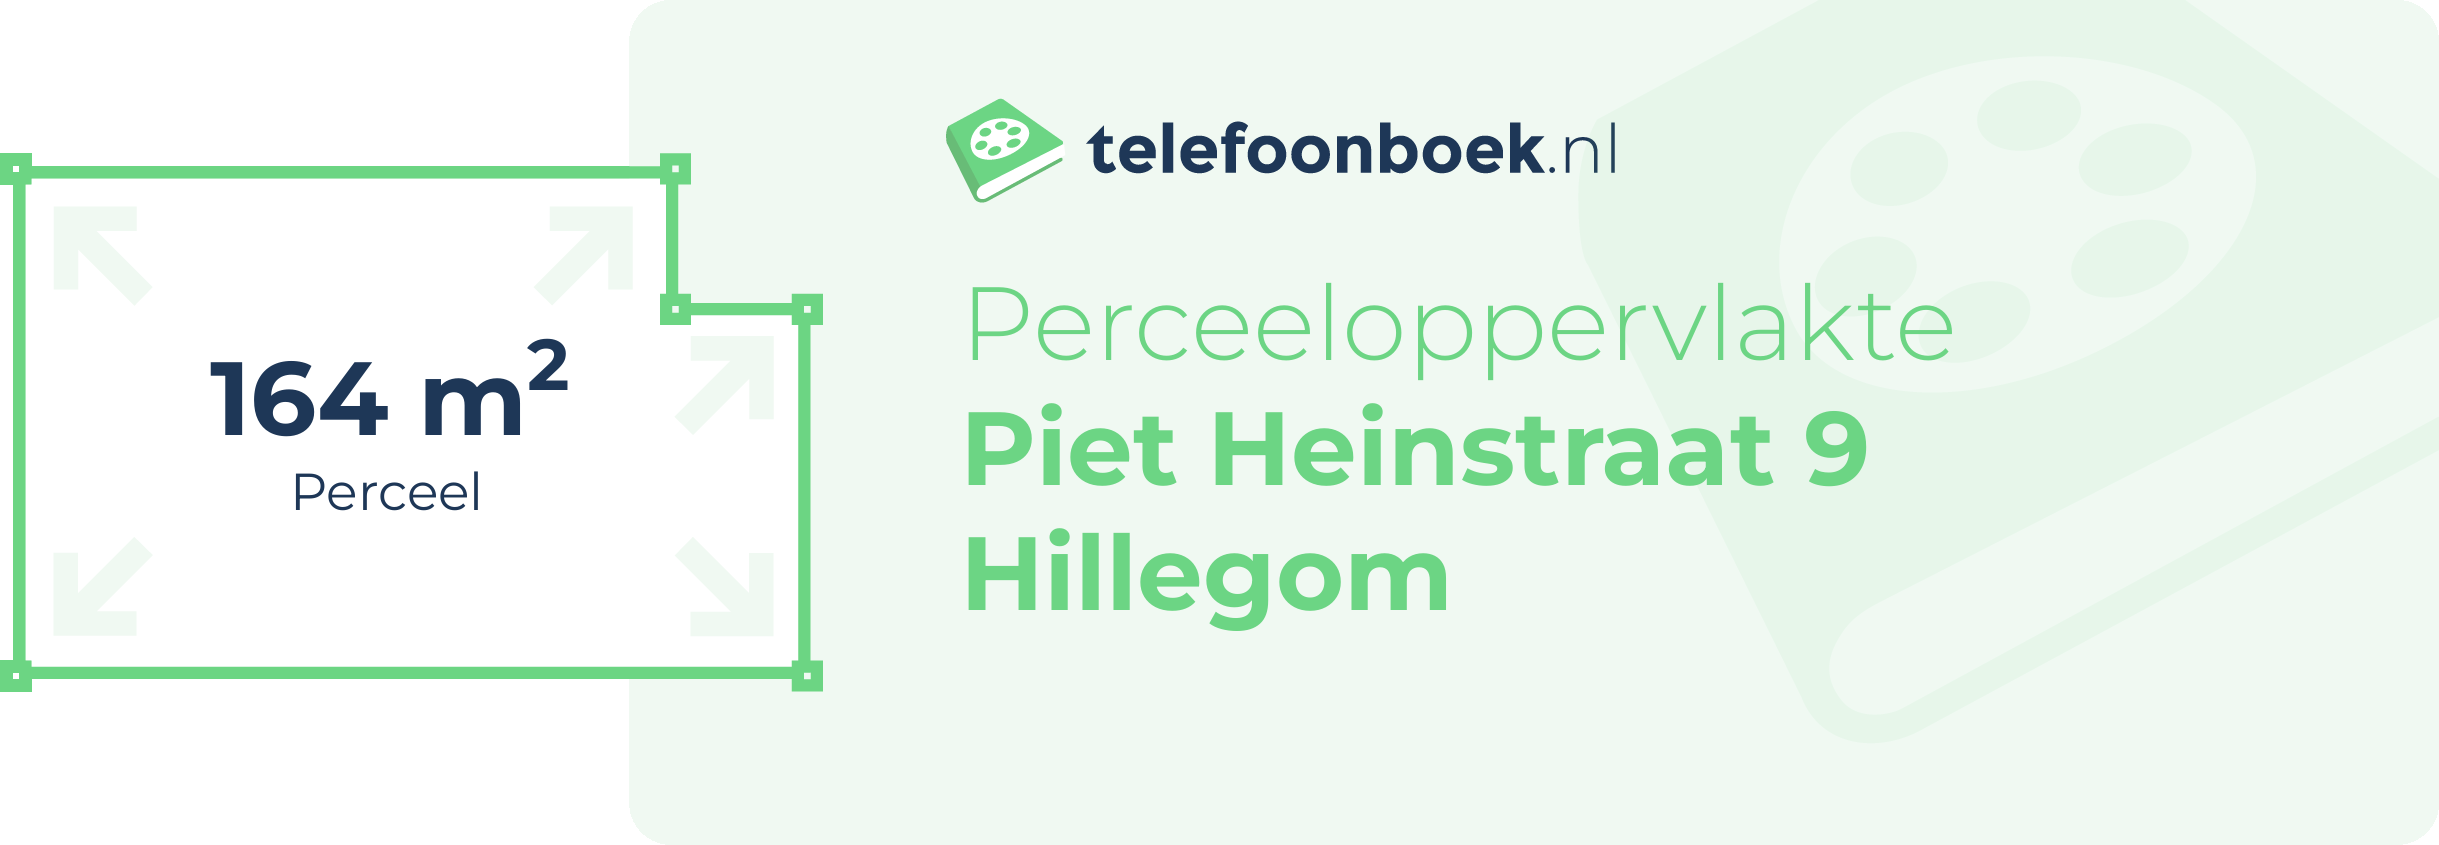 Perceeloppervlakte Piet Heinstraat 9 Hillegom